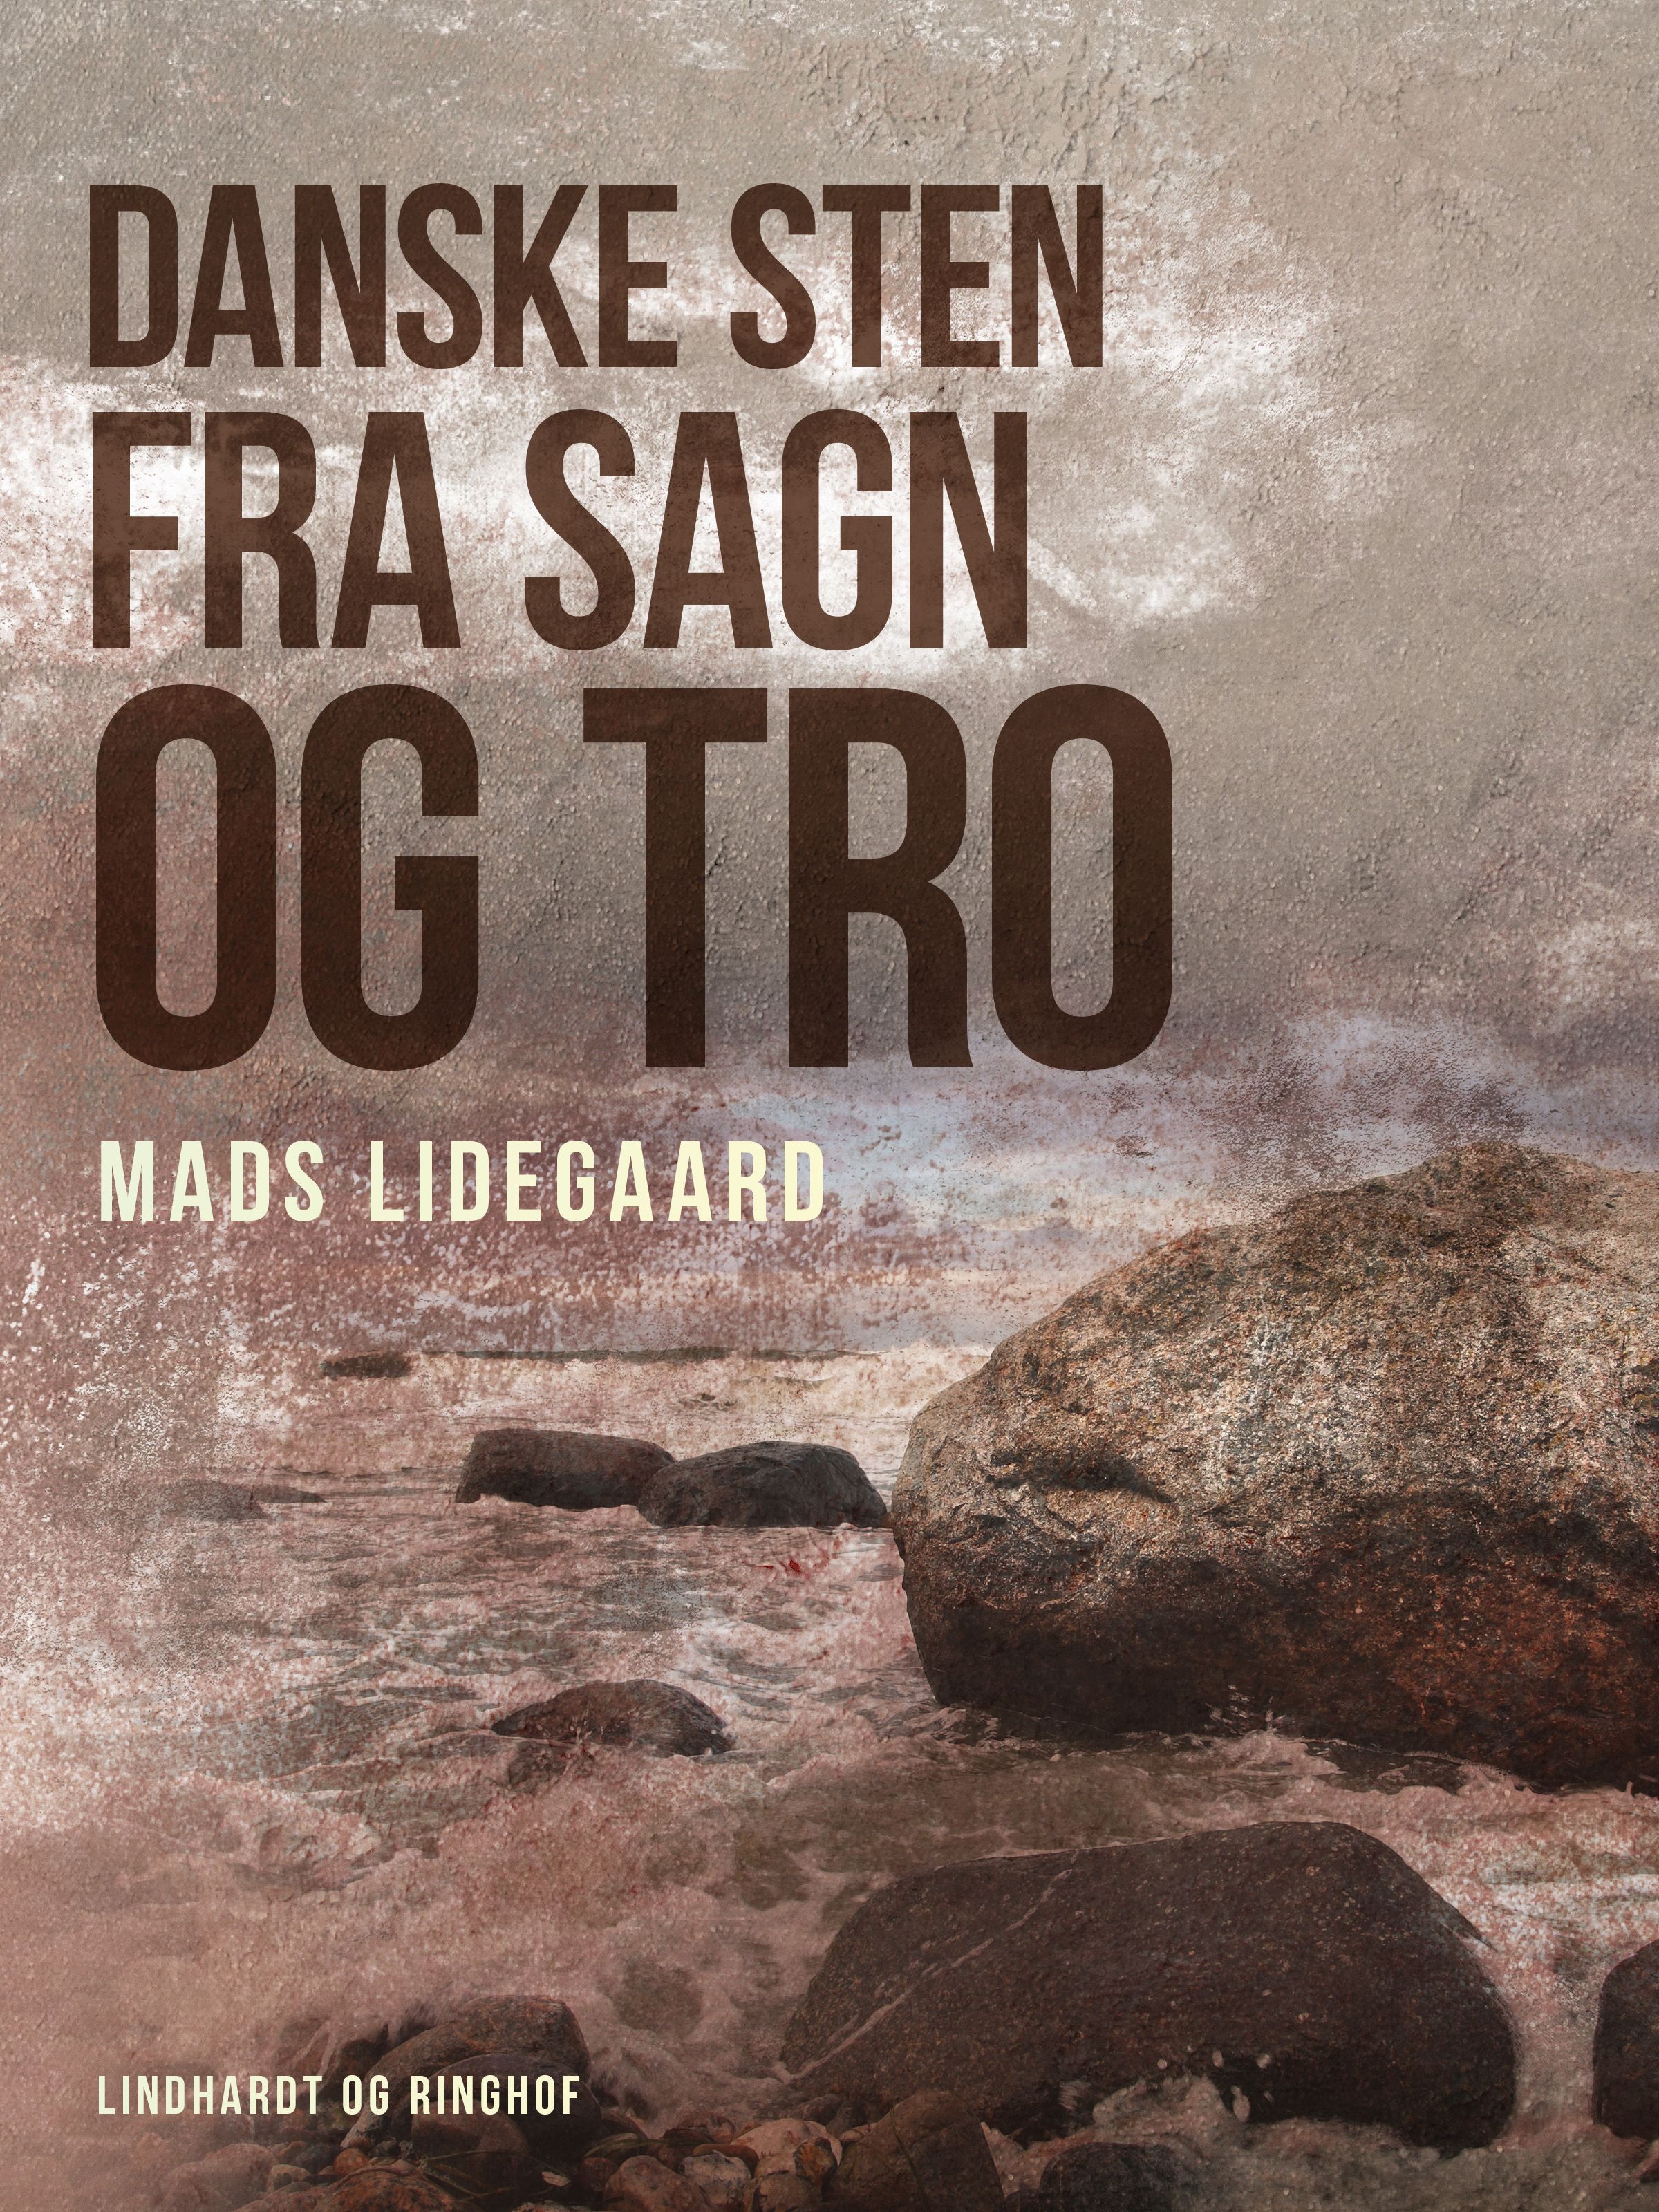 Danske sten fra sagn og tro, e-bok av Mads Lidegaard